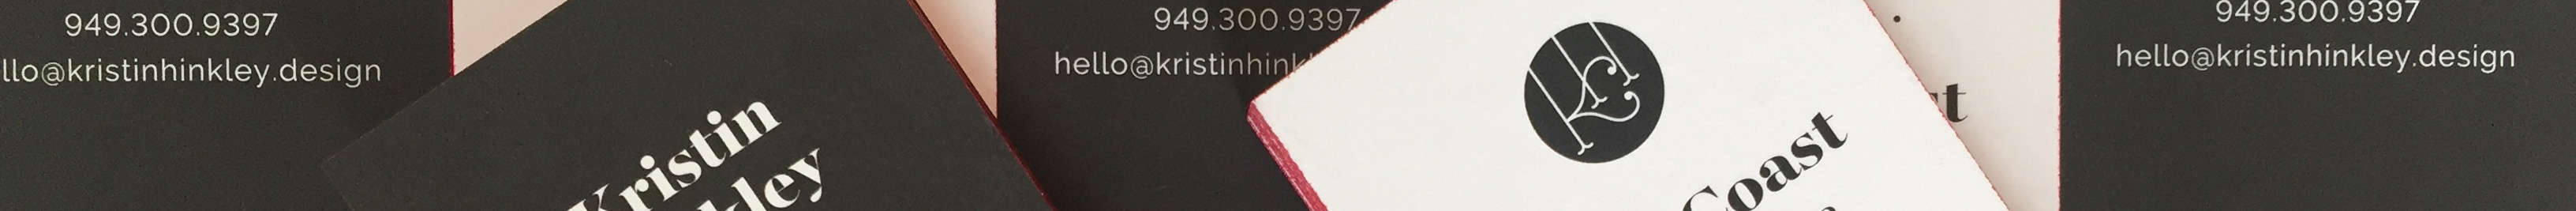 Kristin Hinkley's profile banner